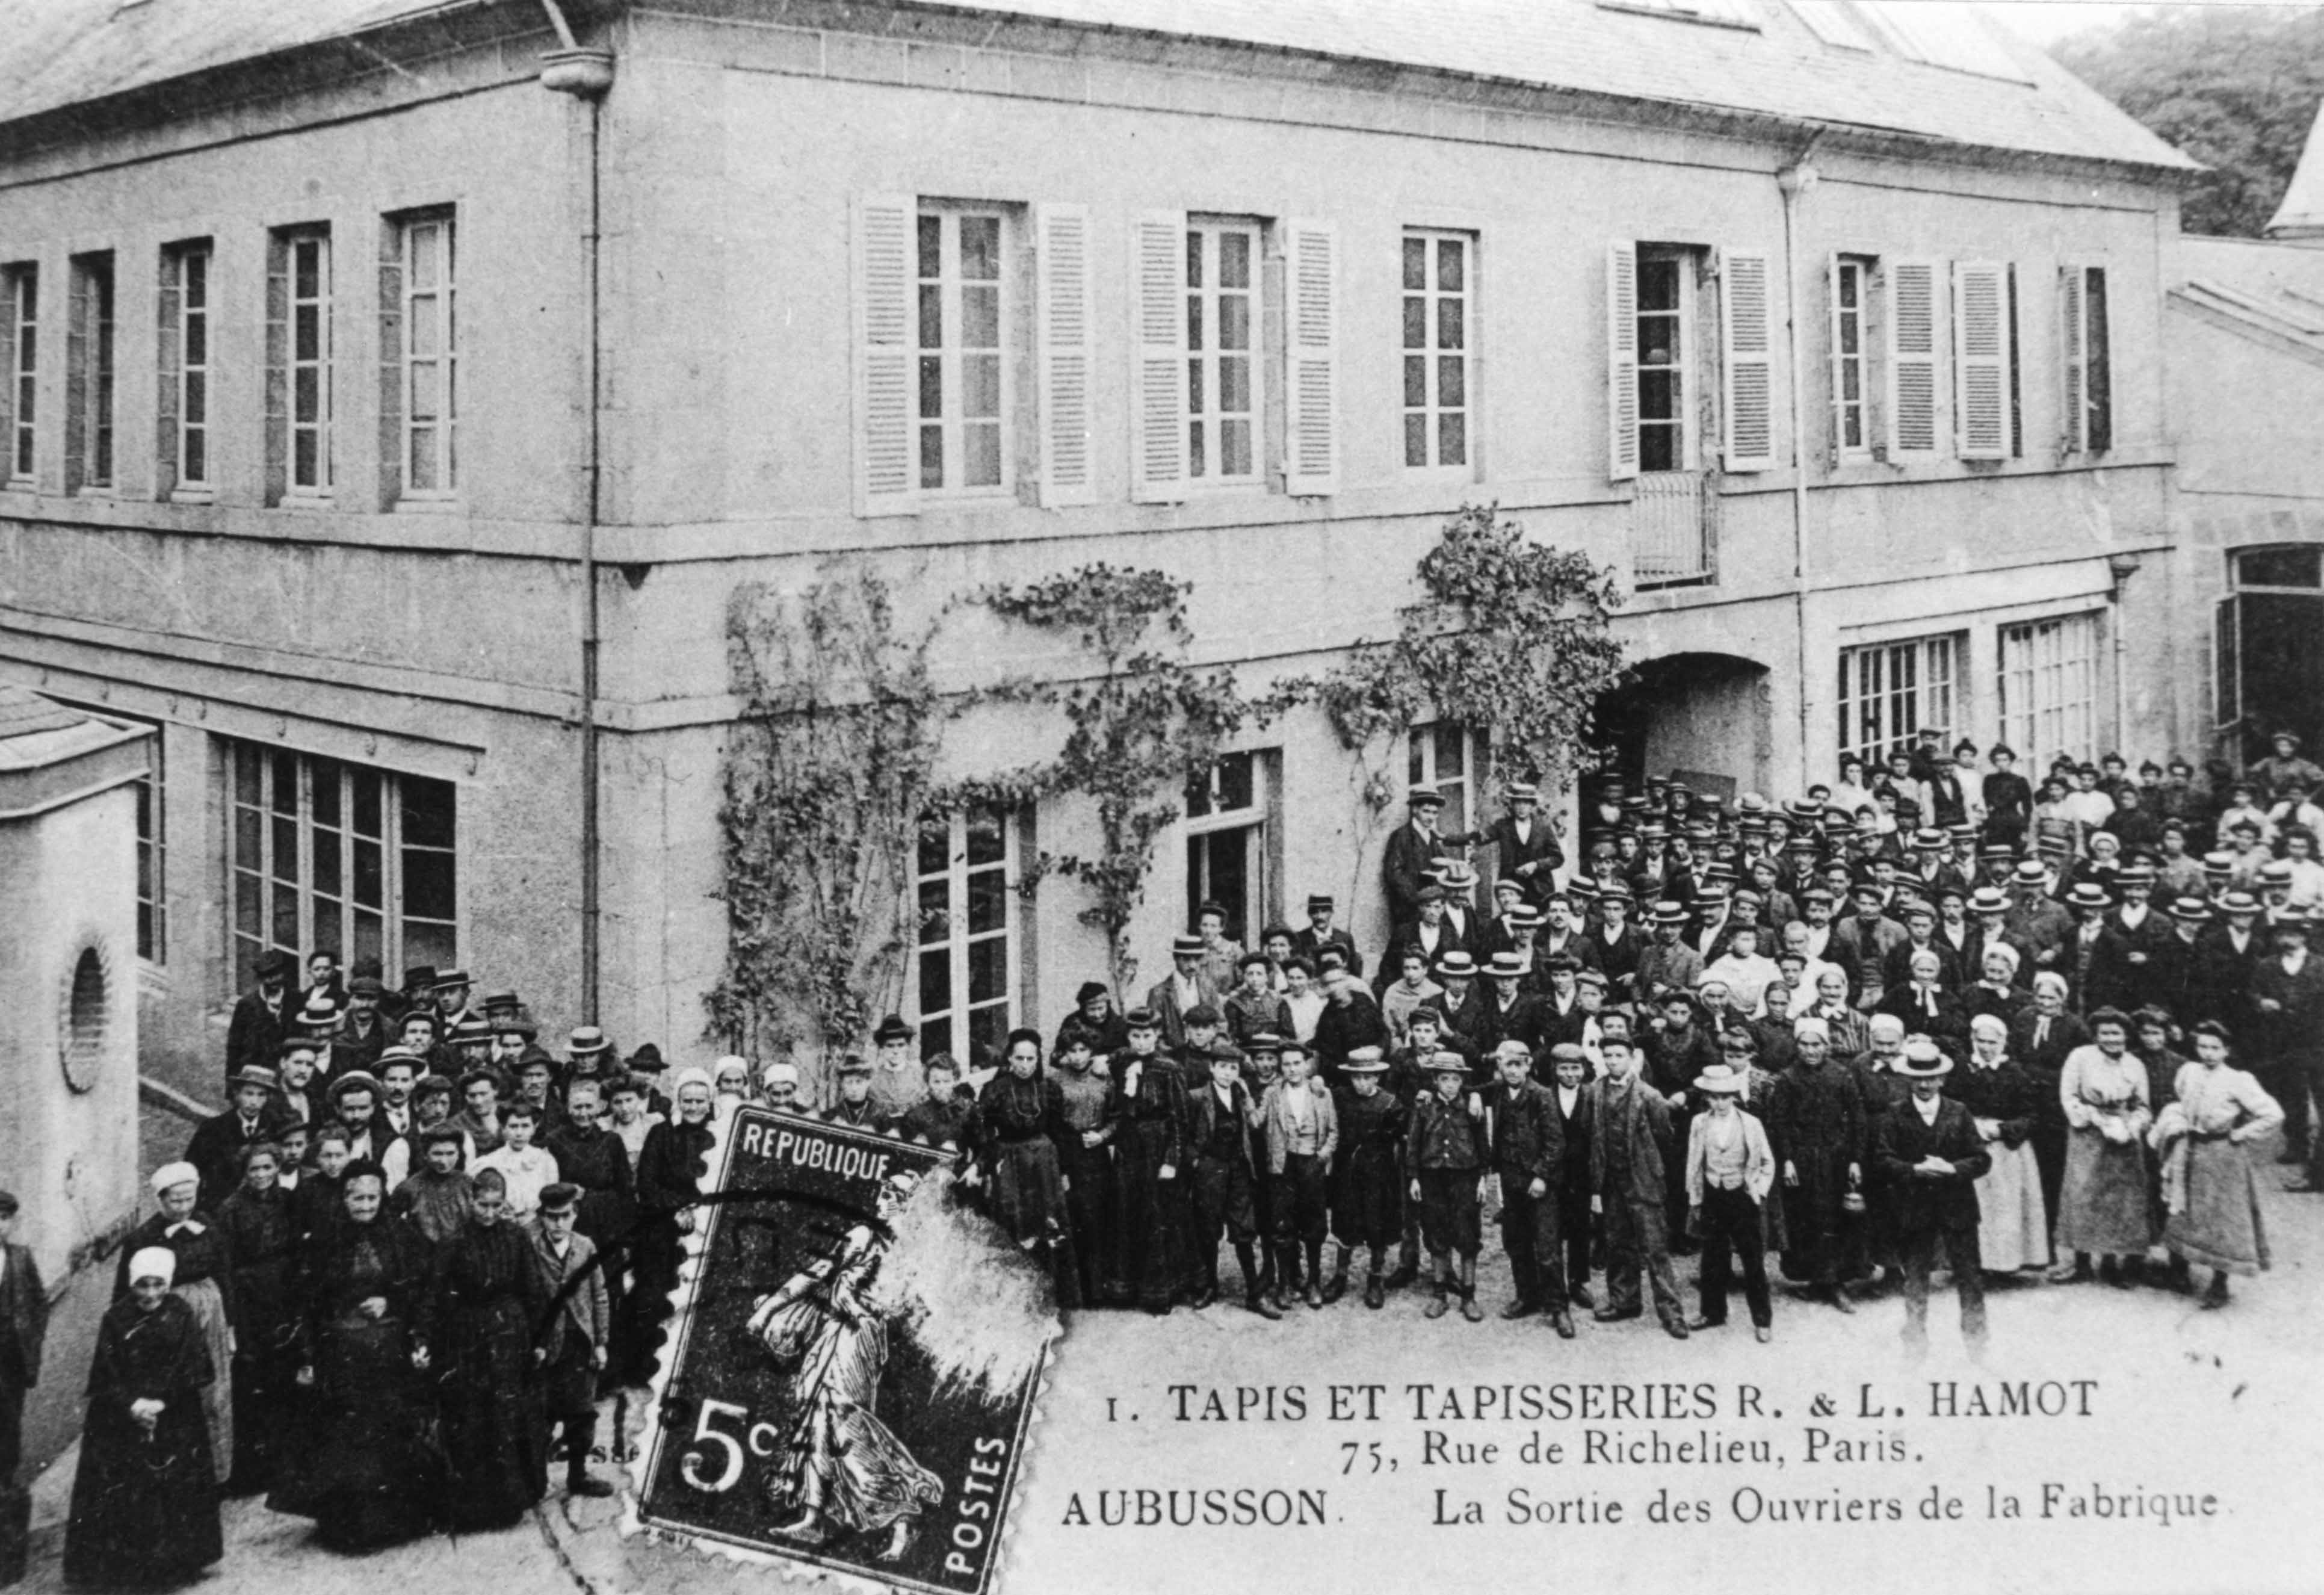 Carte postale (1er quart du 20e siècle) : la sortie des ouvriers de la manufacture Hamot (Aubusson, centre de documentation du Musée départemental de la Tapisserie) 